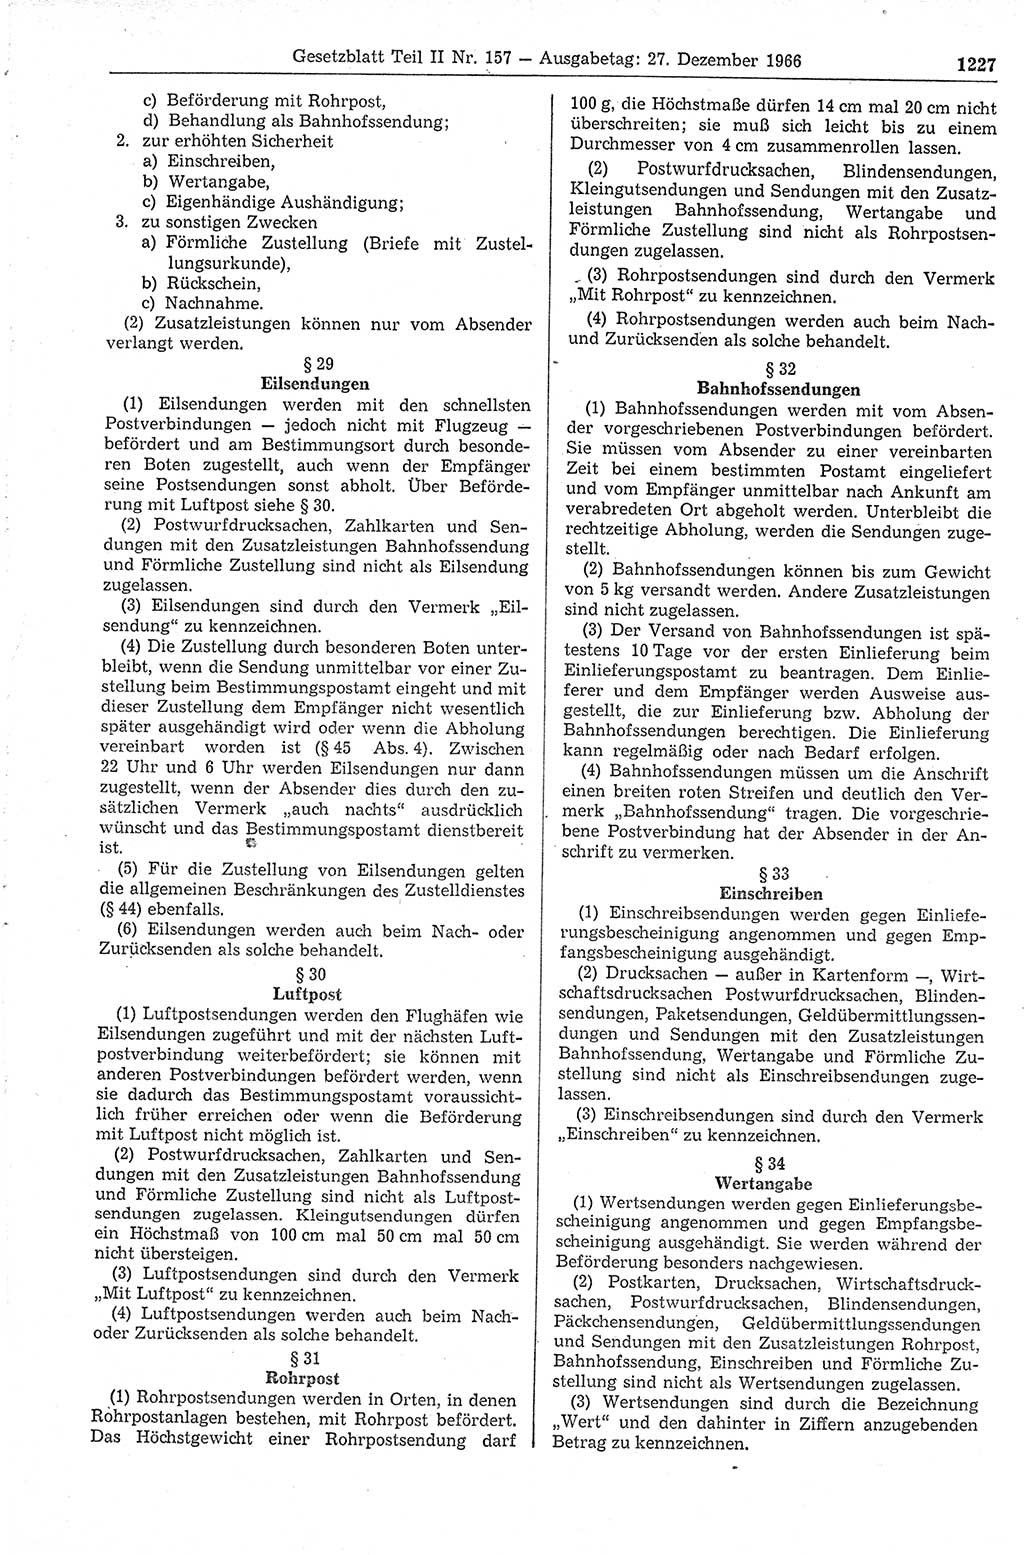 Gesetzblatt (GBl.) der Deutschen Demokratischen Republik (DDR) Teil ⅠⅠ 1966, Seite 1227 (GBl. DDR ⅠⅠ 1966, S. 1227)